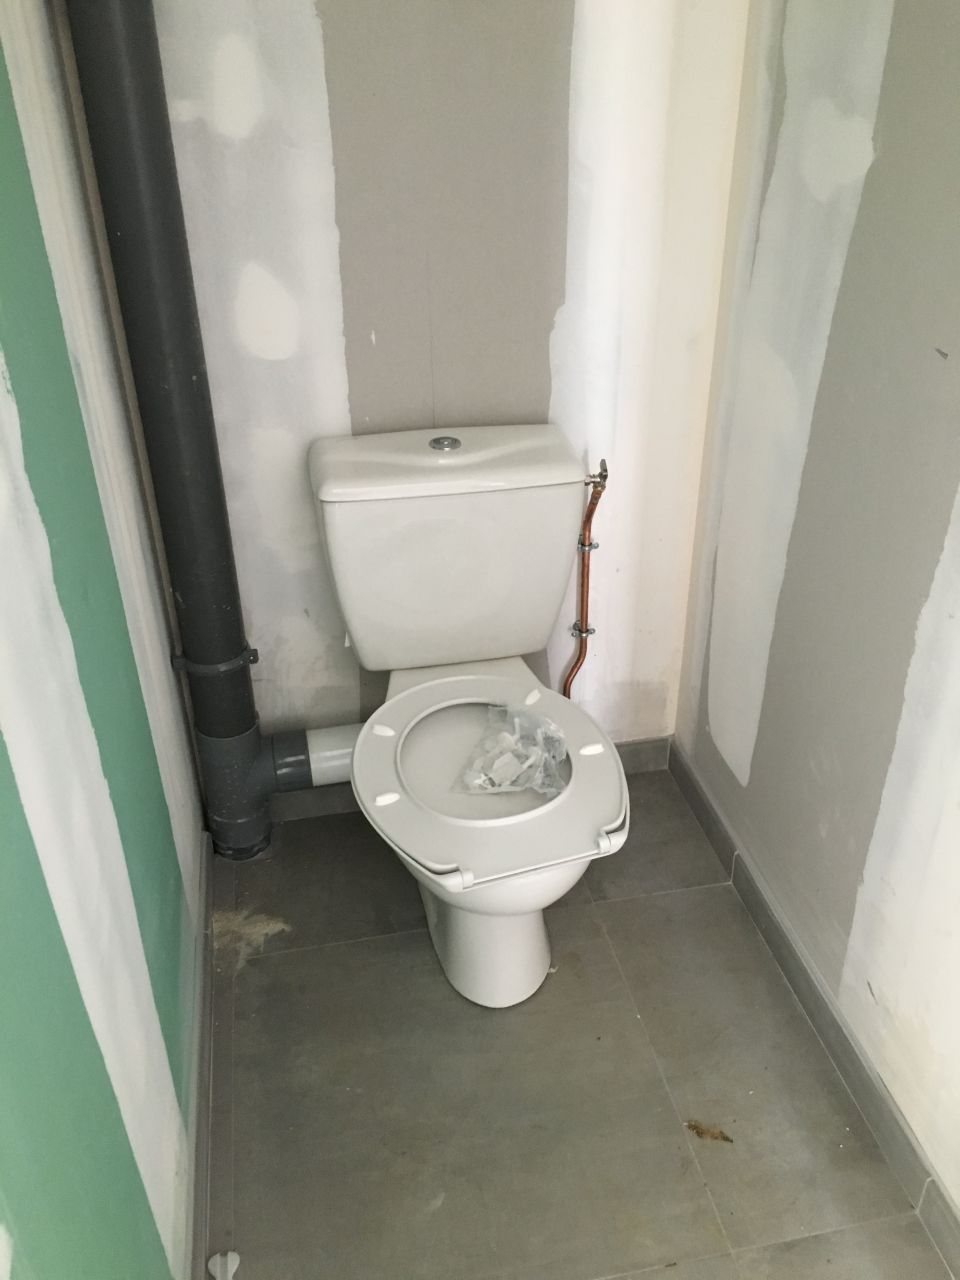 2 WC.... et pourtant un seul et même toilette ?!? 
<br />
en fait petite erreur du plombier ces WC au sol ont été installé alors que j'avais commandé des WC suspendu....